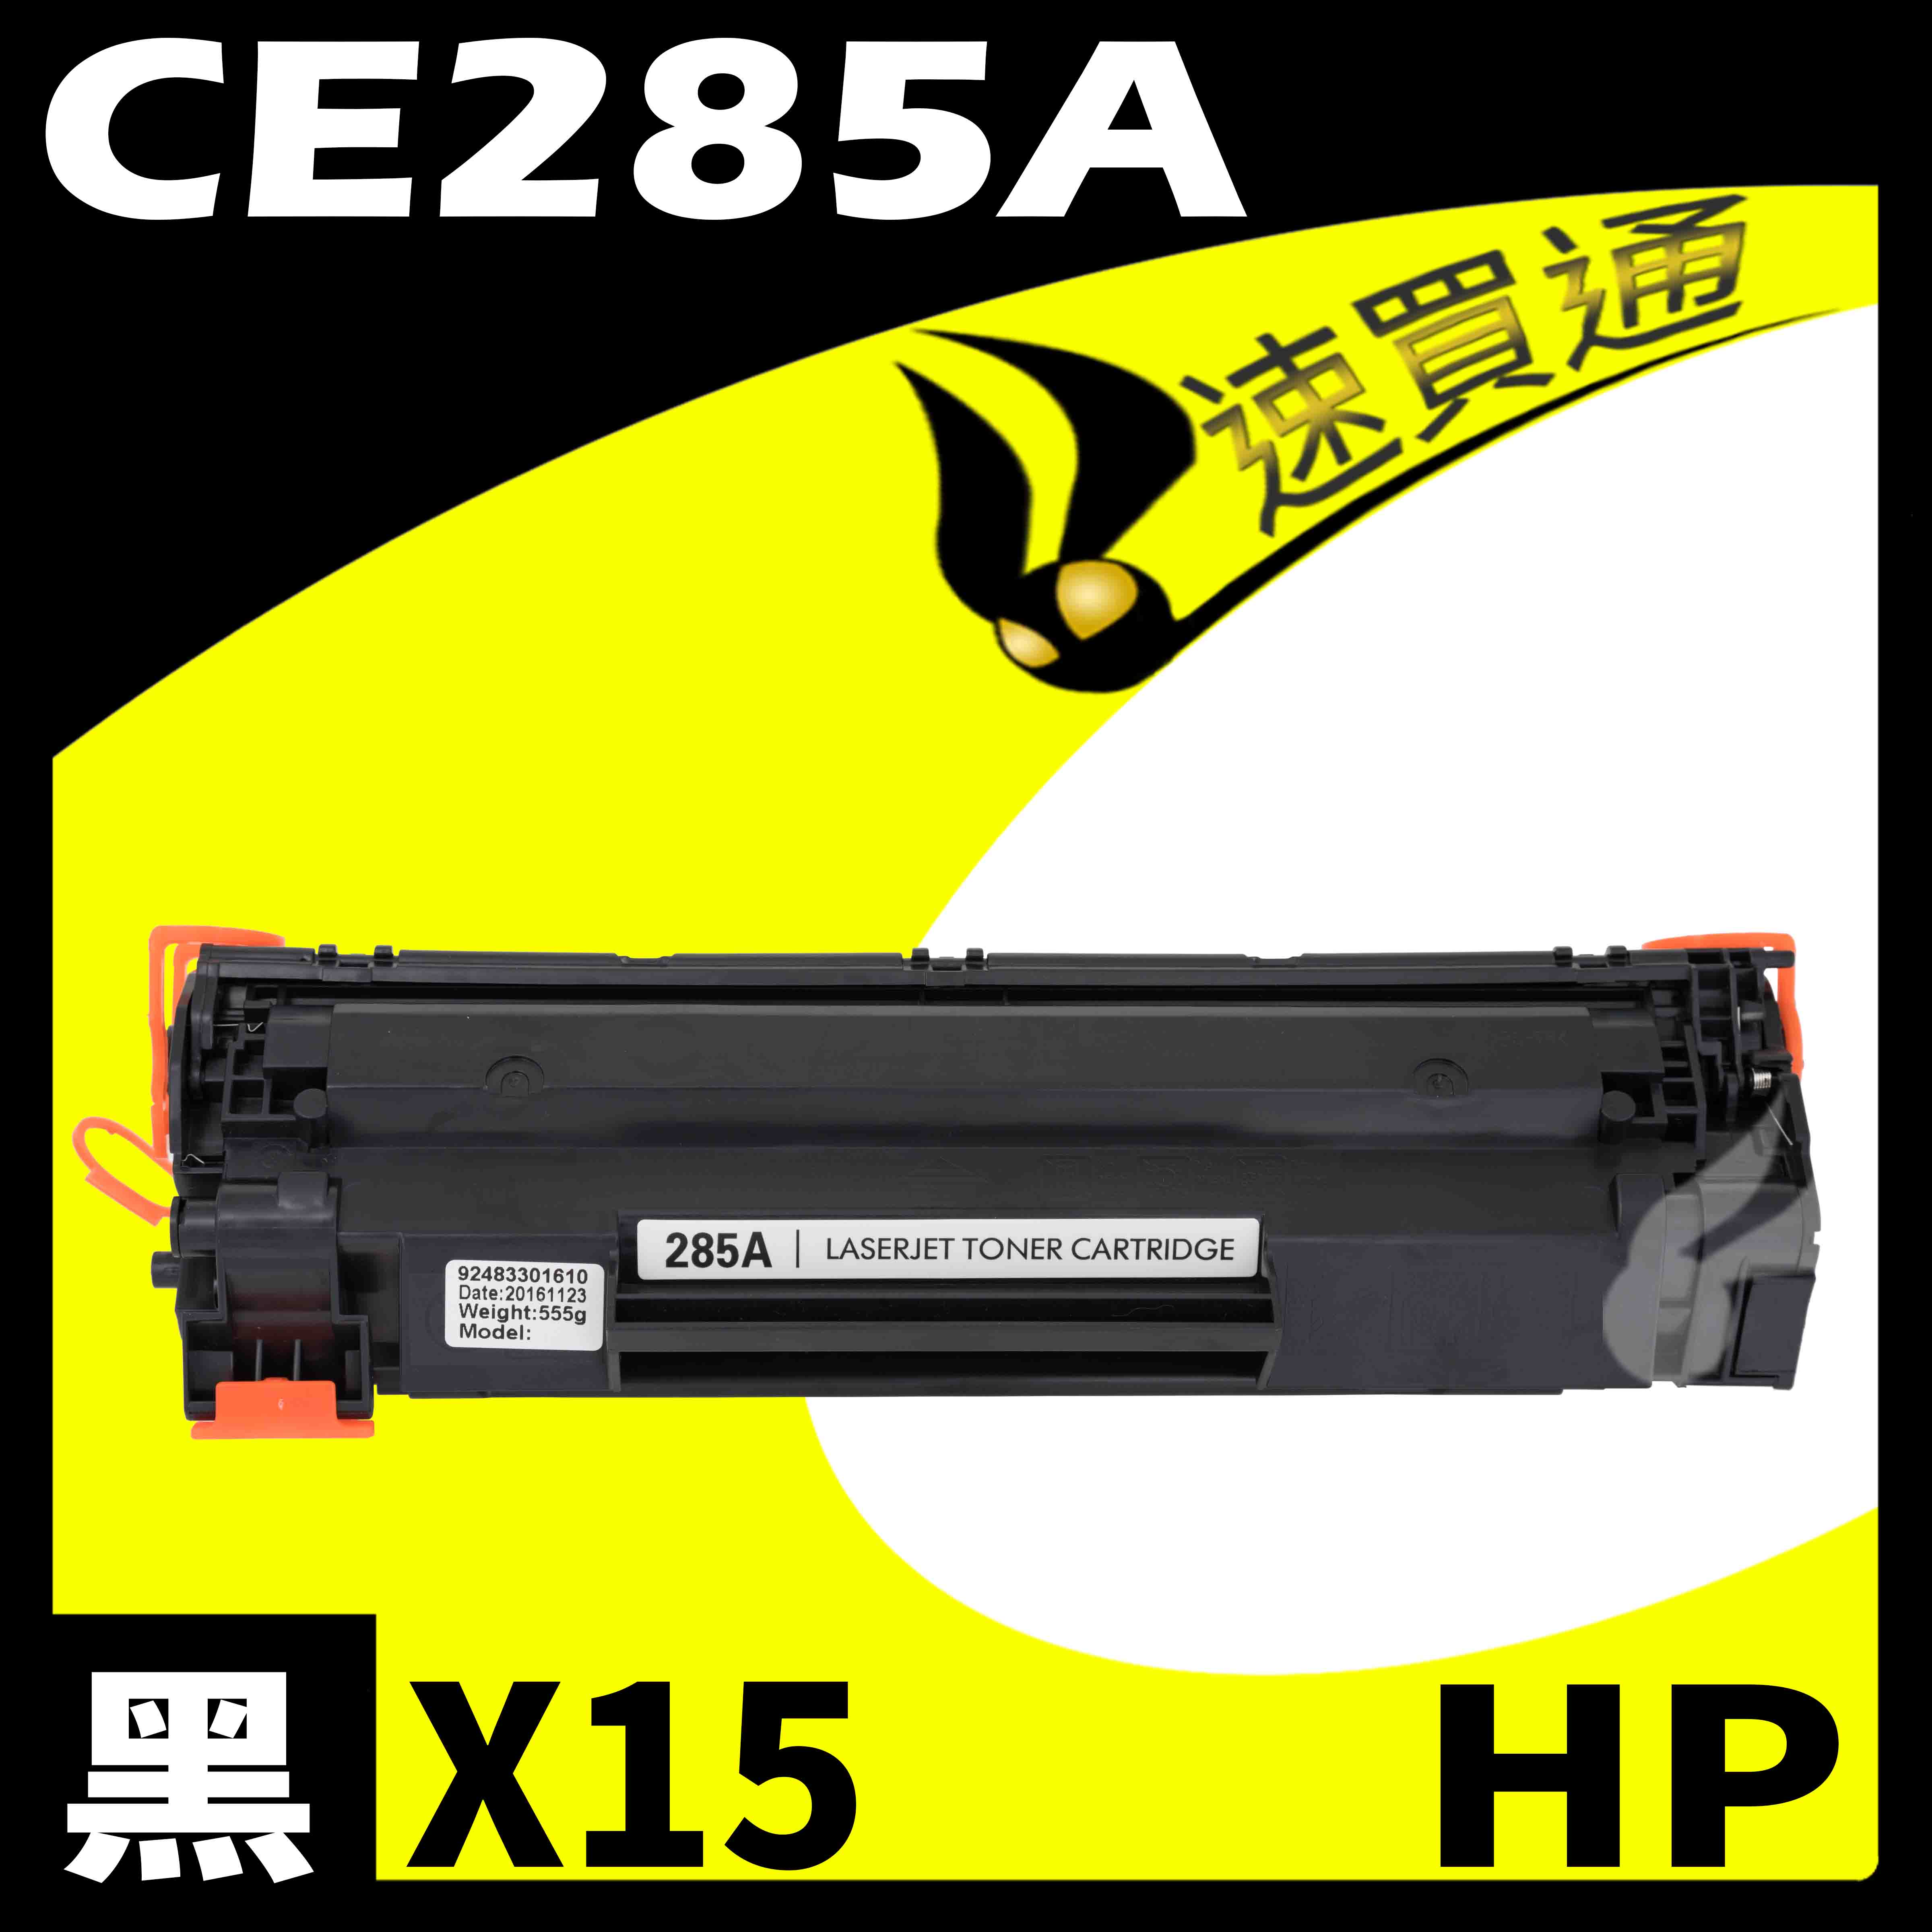 【速買通】超值15件組 HP CE285A 相容碳粉匣